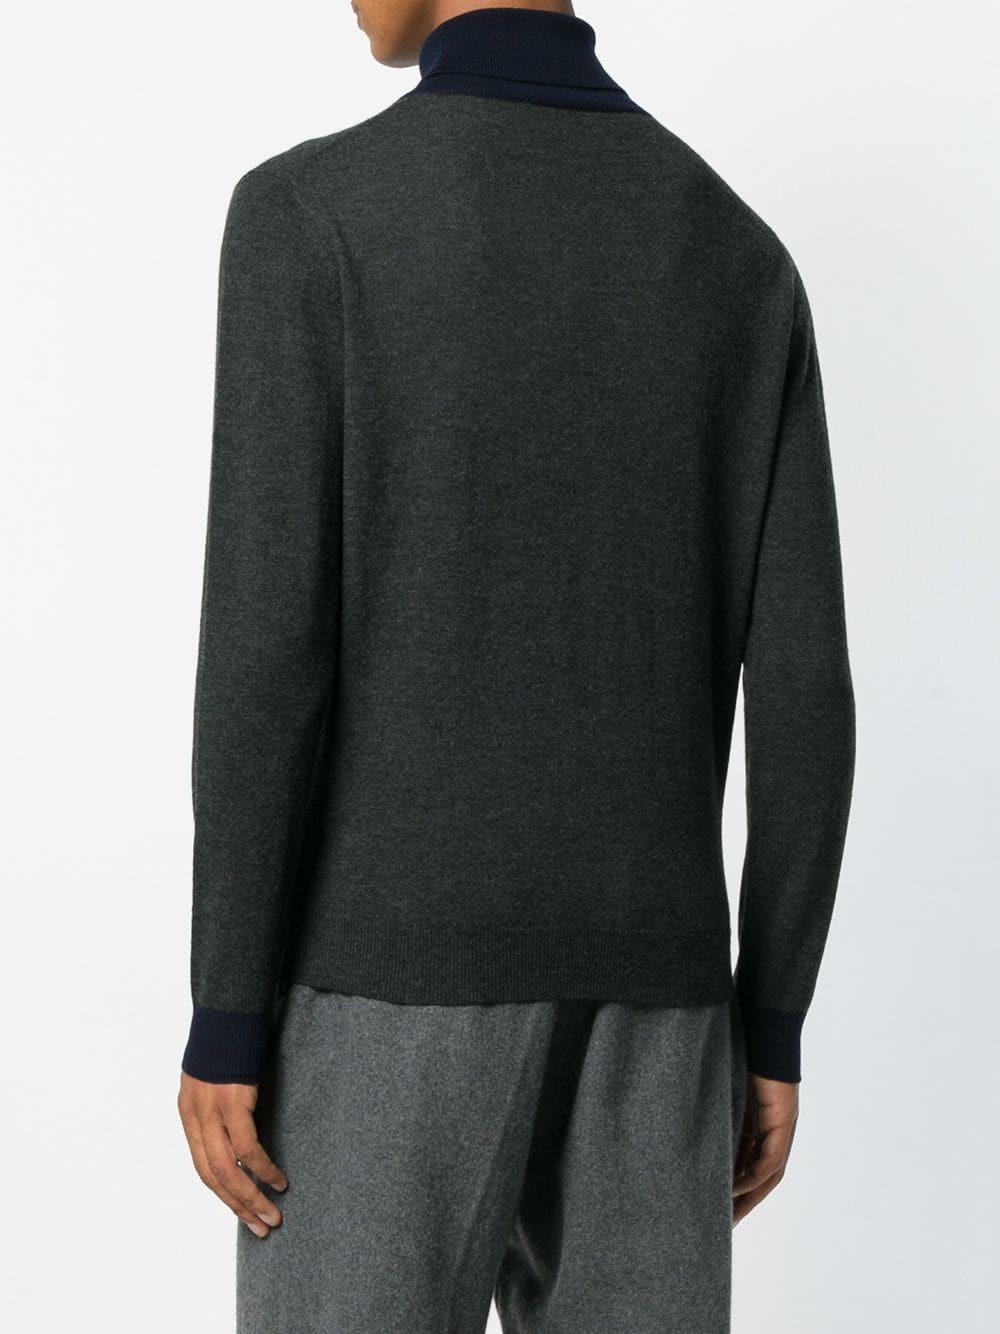 Altea Two Tone Turtleneck Sweater, $179 | farfetch.com | Lookastic